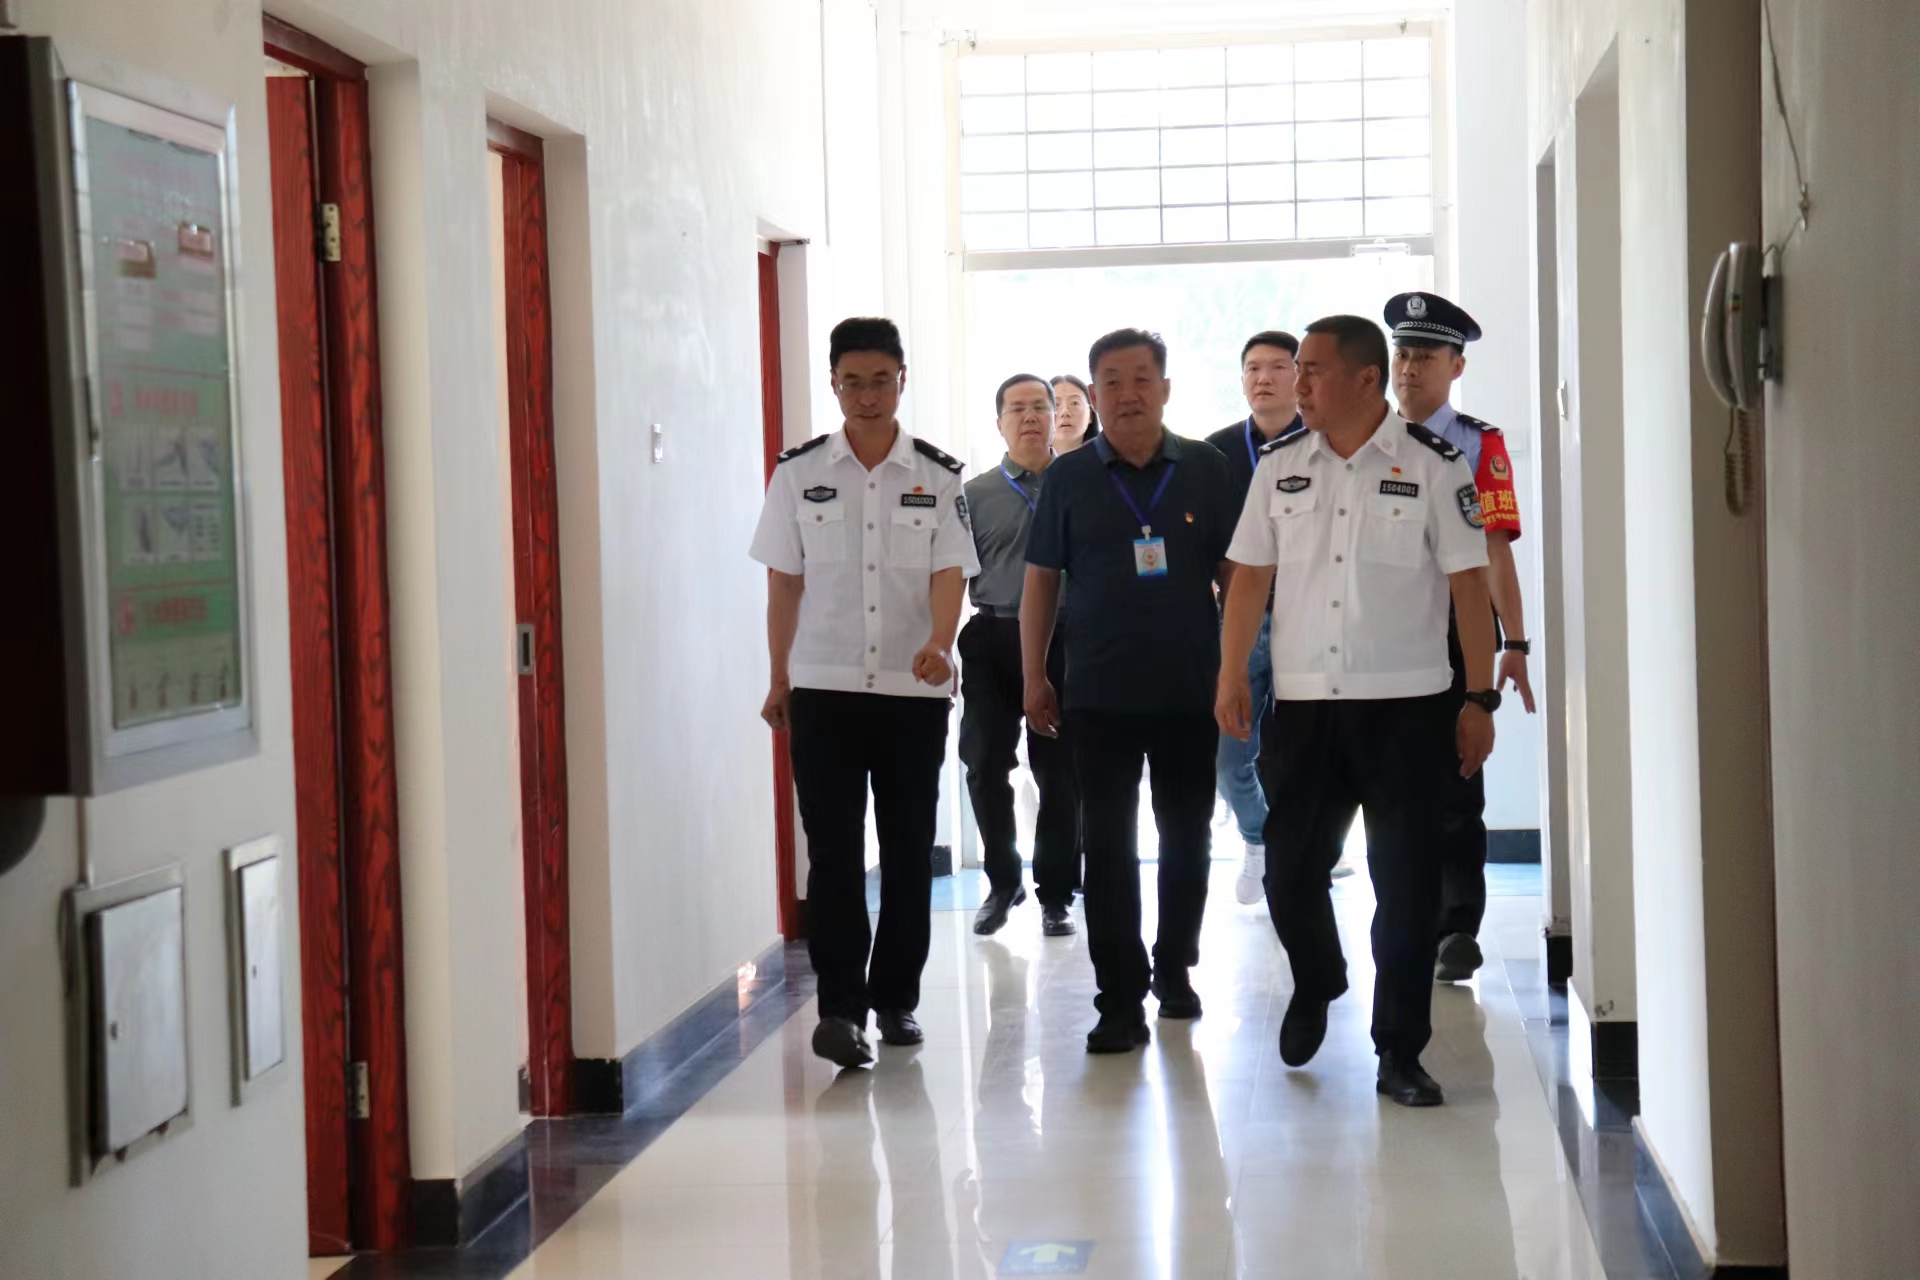 内蒙古发展改革委组织干部职工赴呼和浩特第二监狱开展廉政警示教育